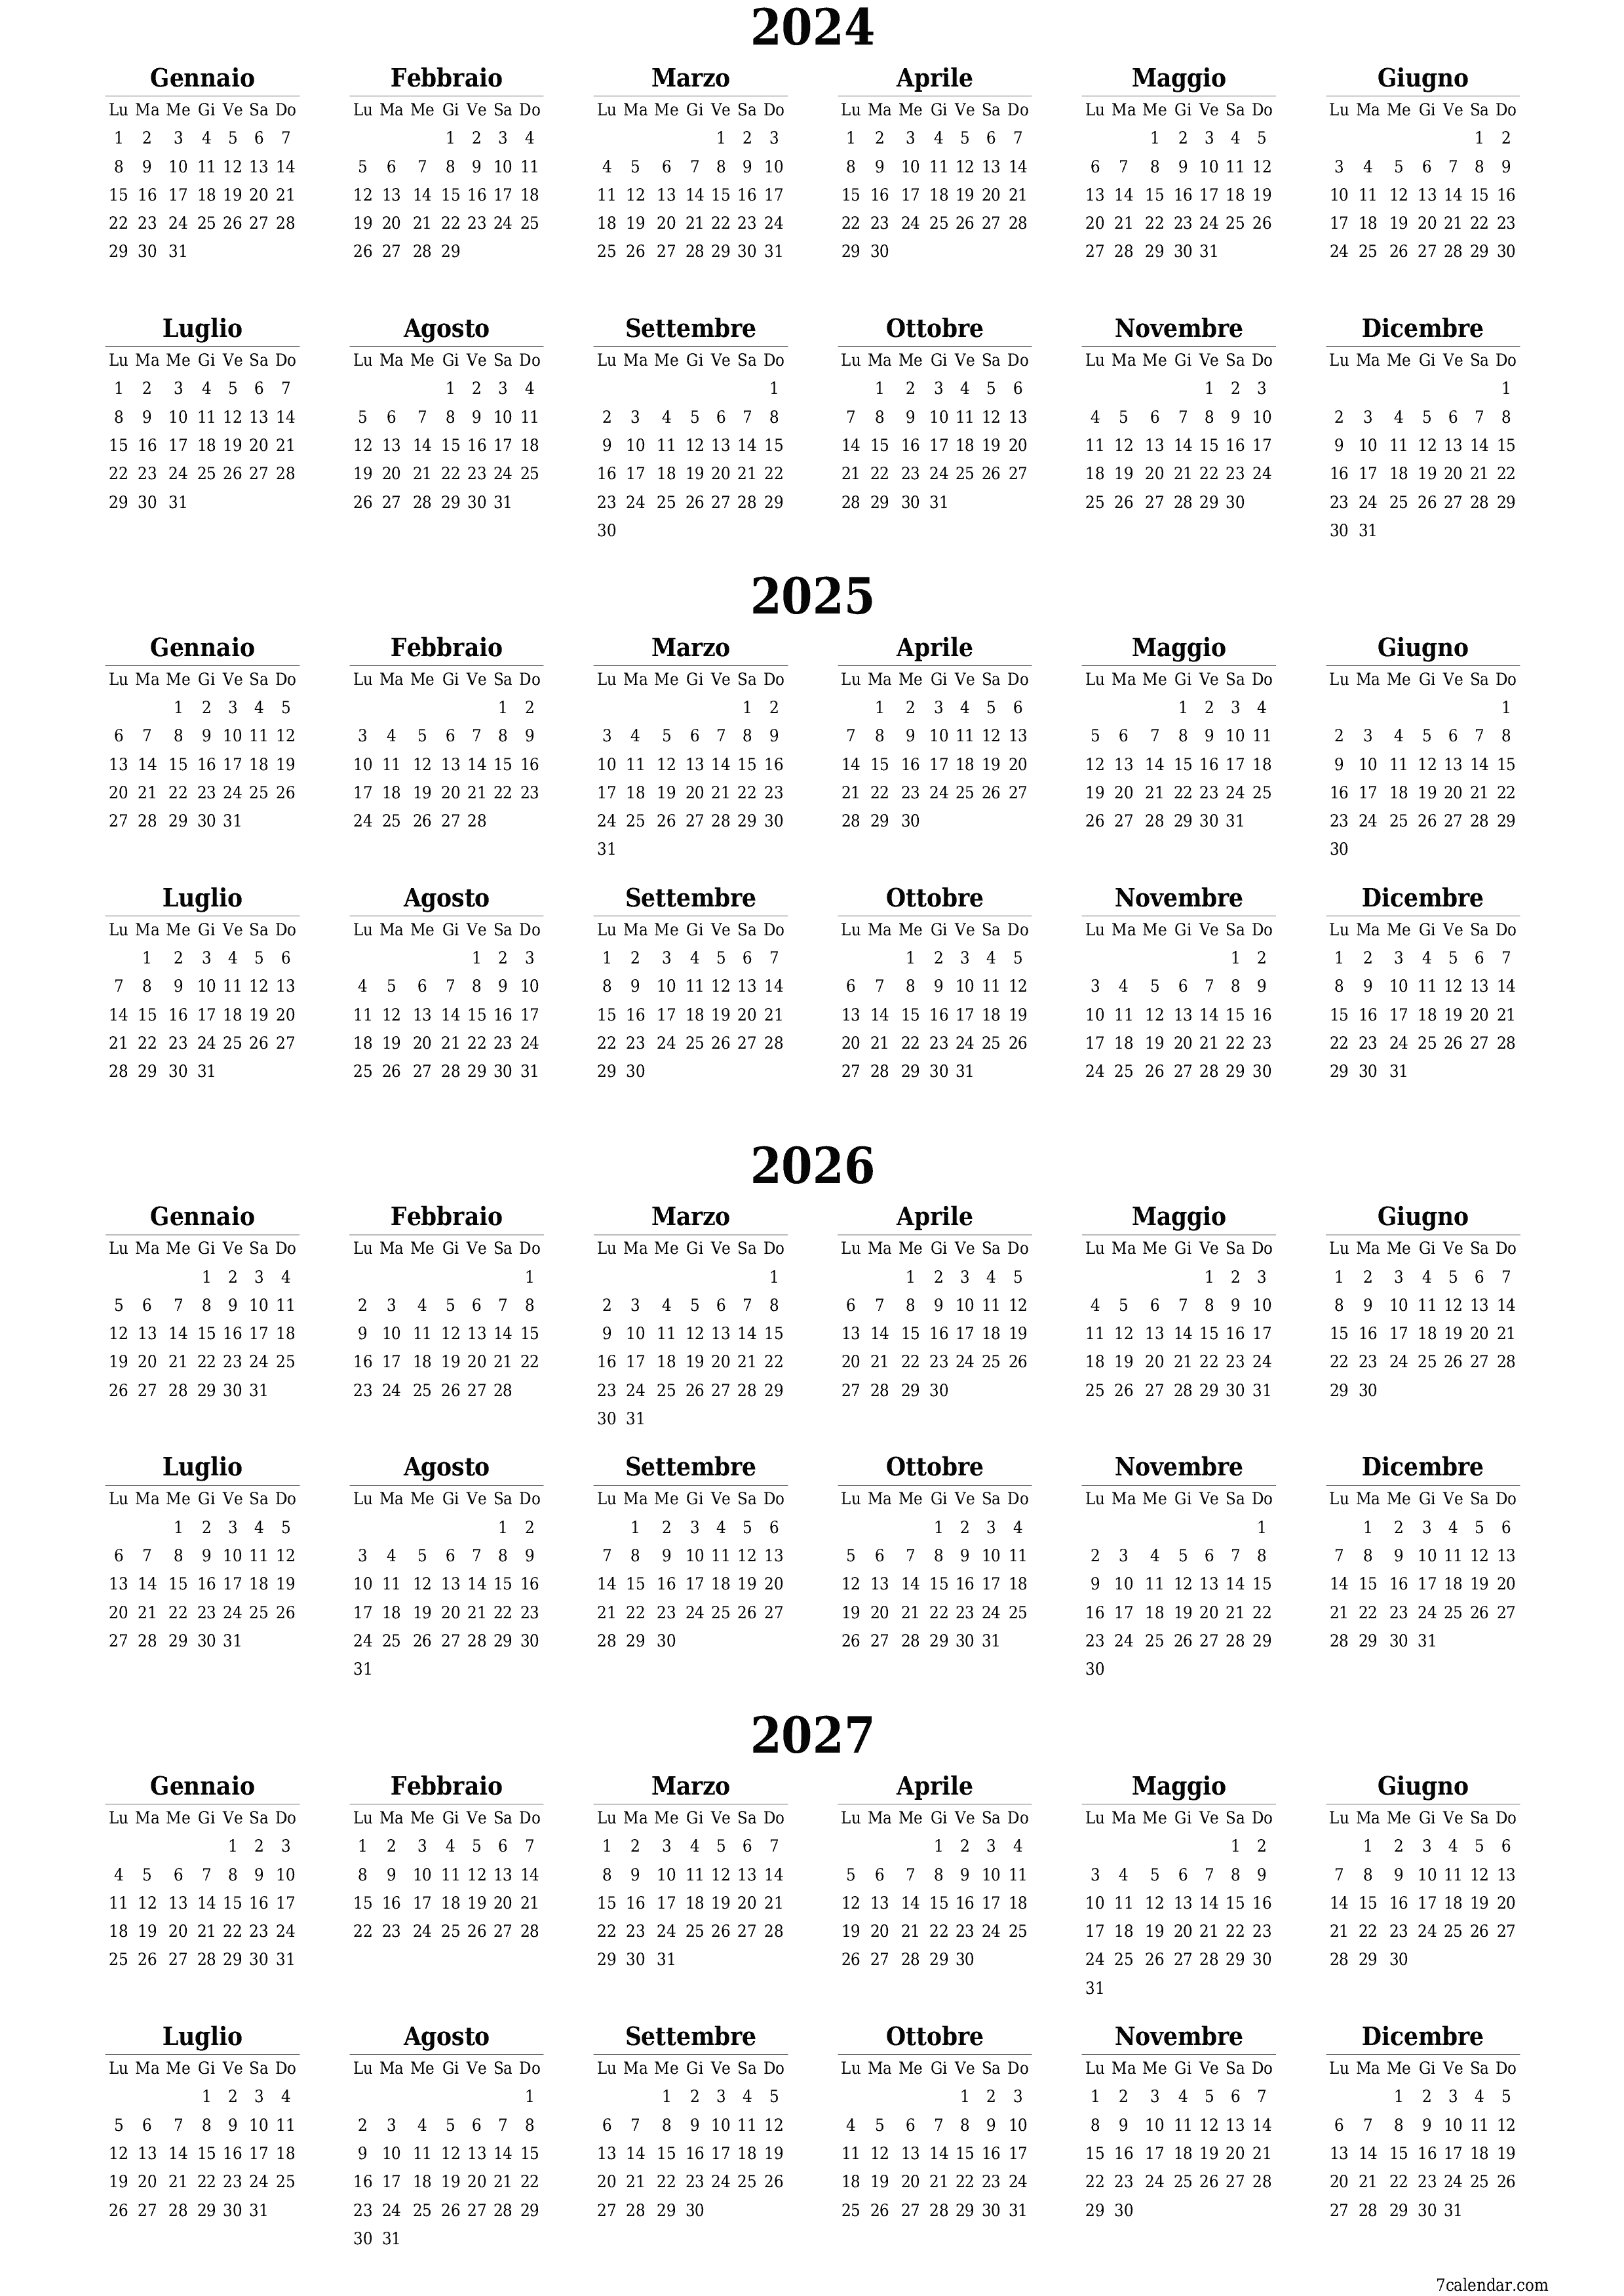  stampabile da parete modello di gratuitoverticale Annuale calendario Aprile (Apr) 2024